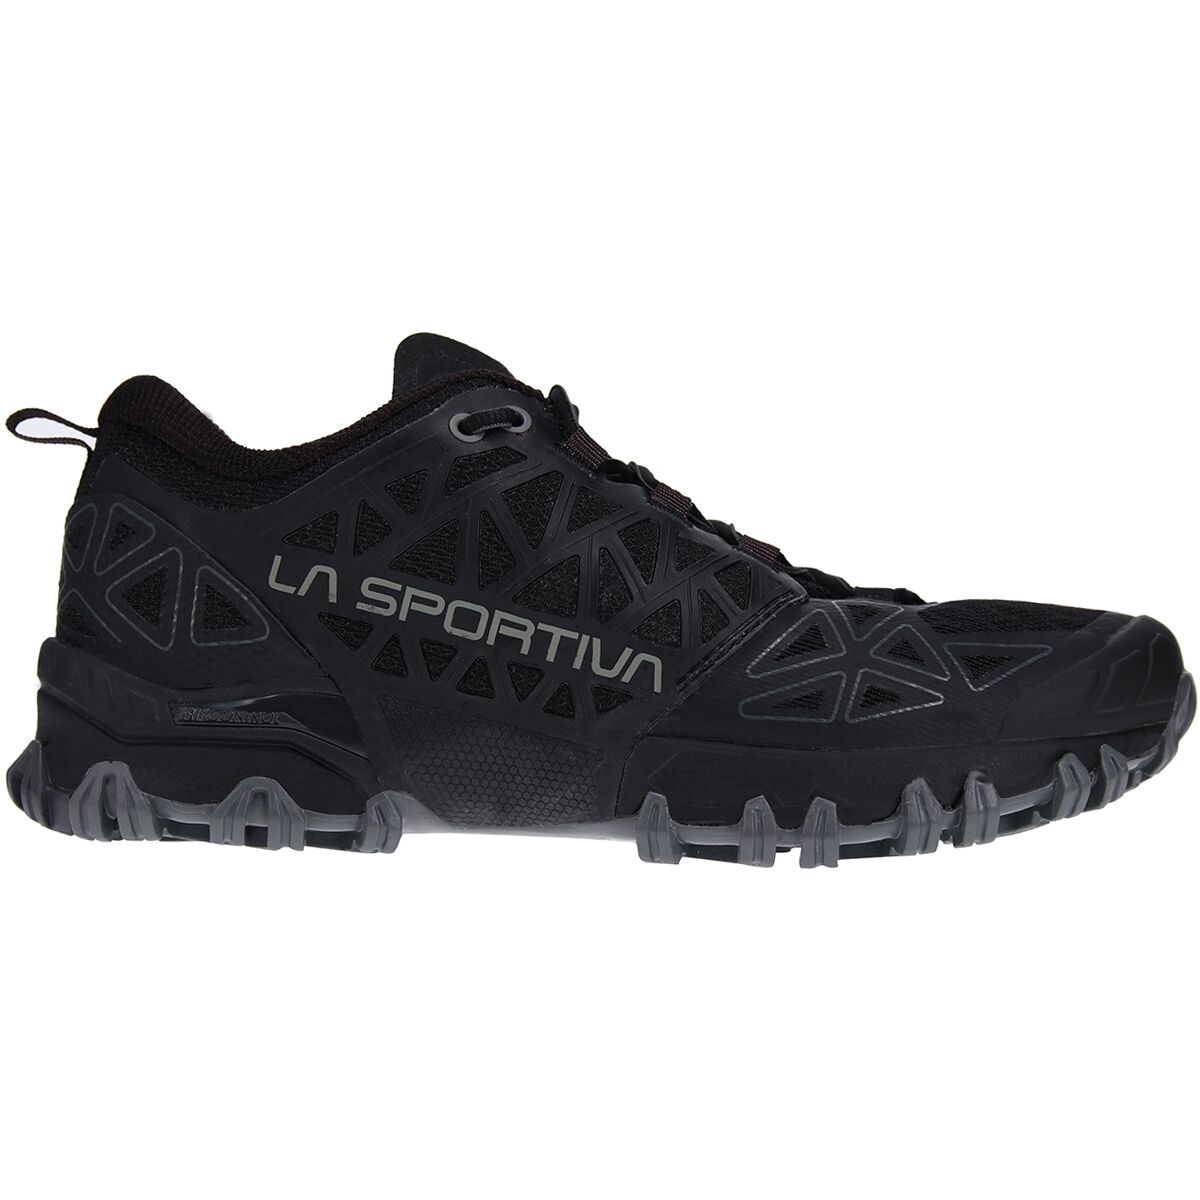 Трековая обувь для бега по пересеченной местности Bushido II от La Sportiva для женщин La Sportiva